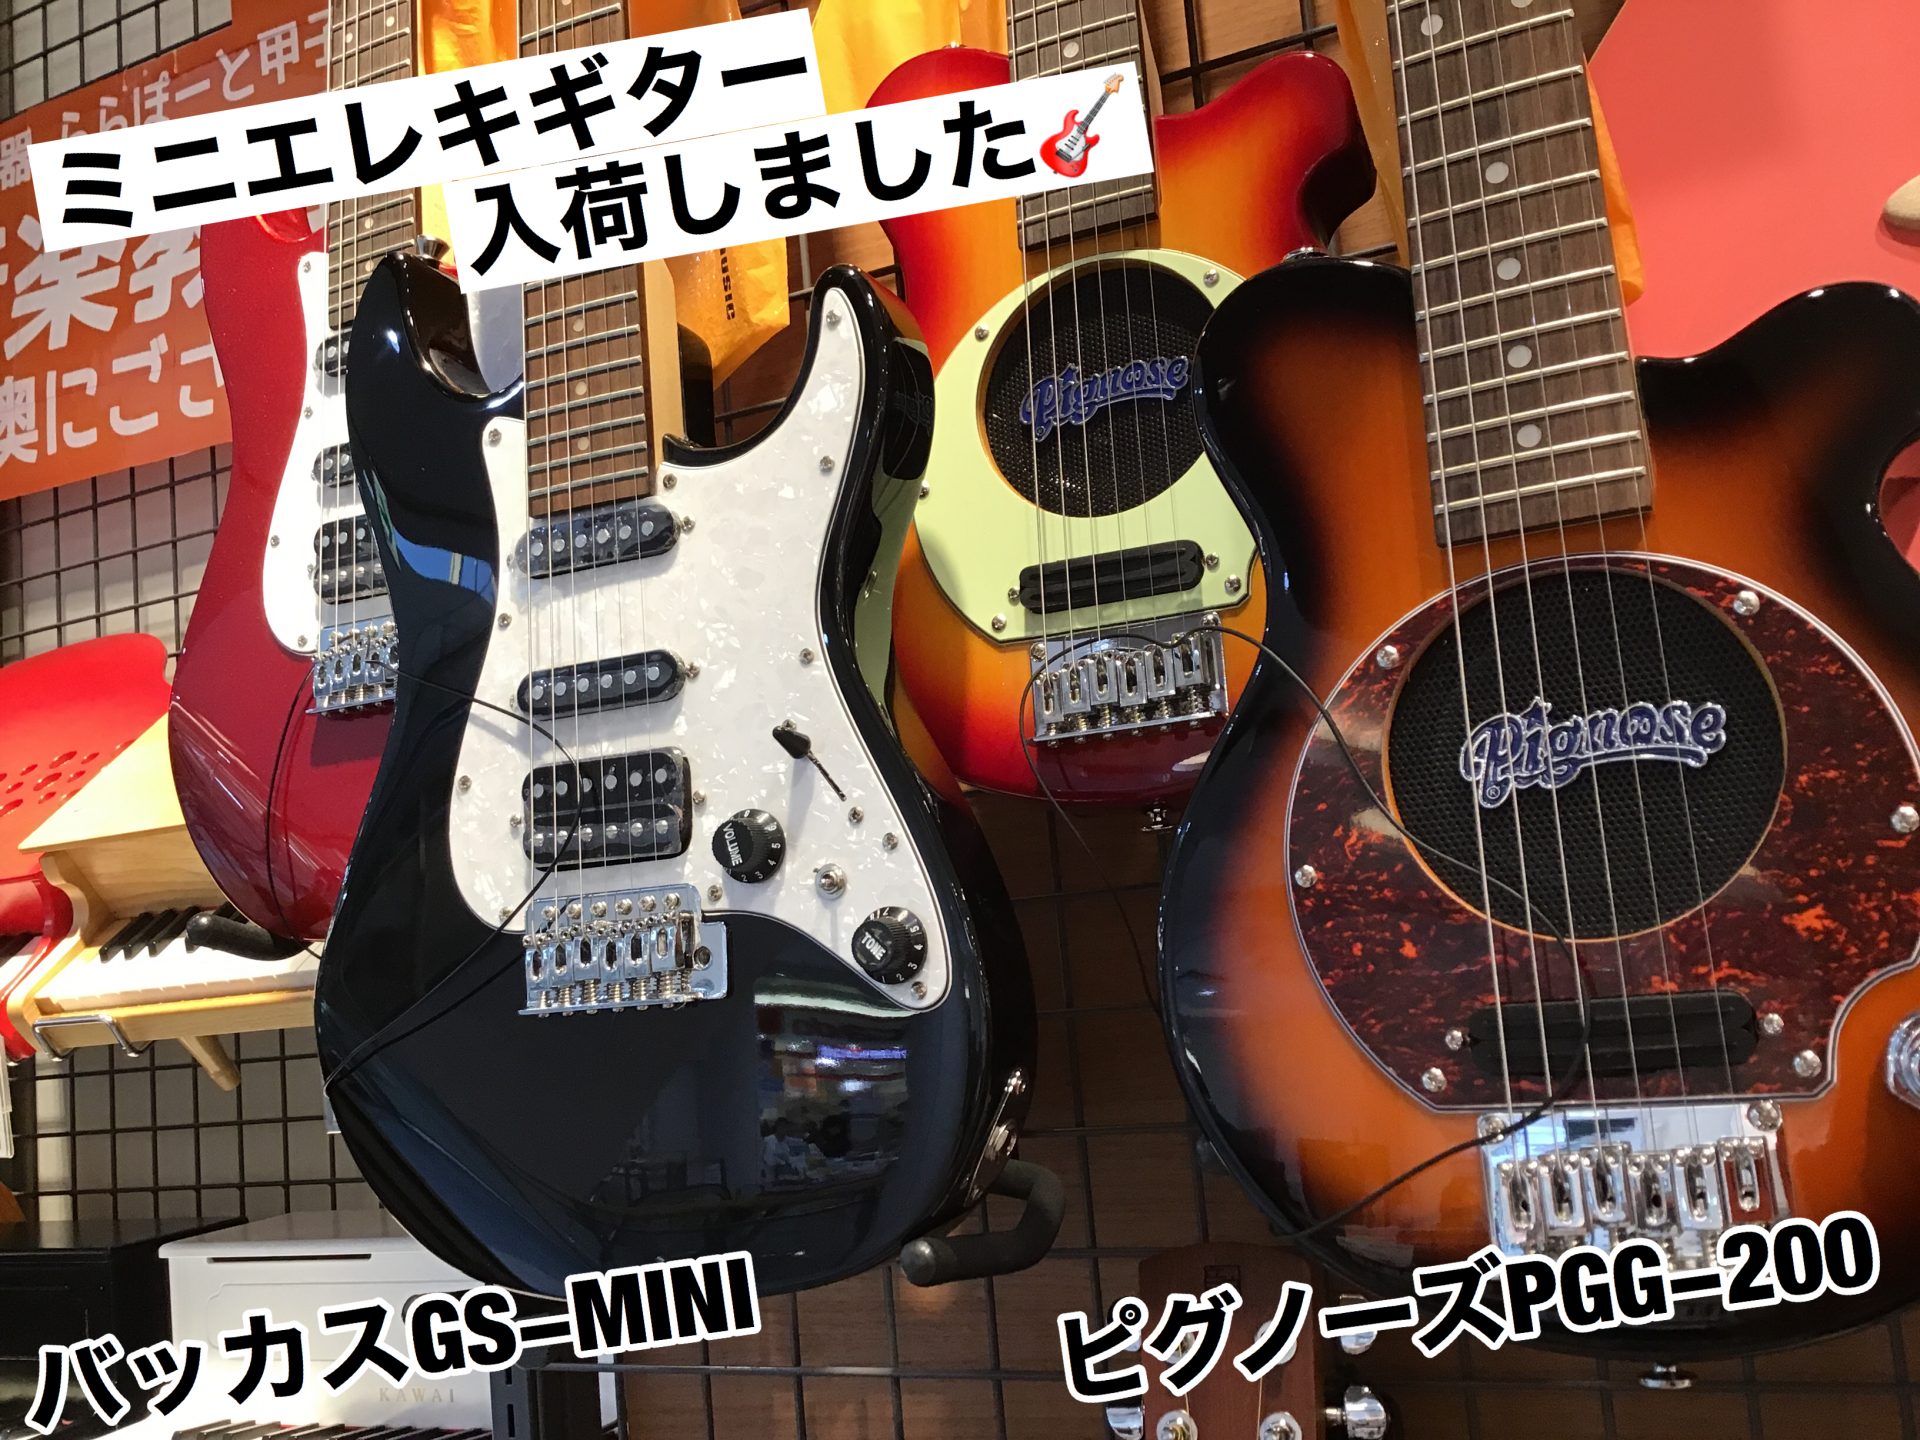 ミニギター おすすめモデルをご紹介 プレゼントにもいかがでしょうか 島村楽器 ららぽーと甲子園店